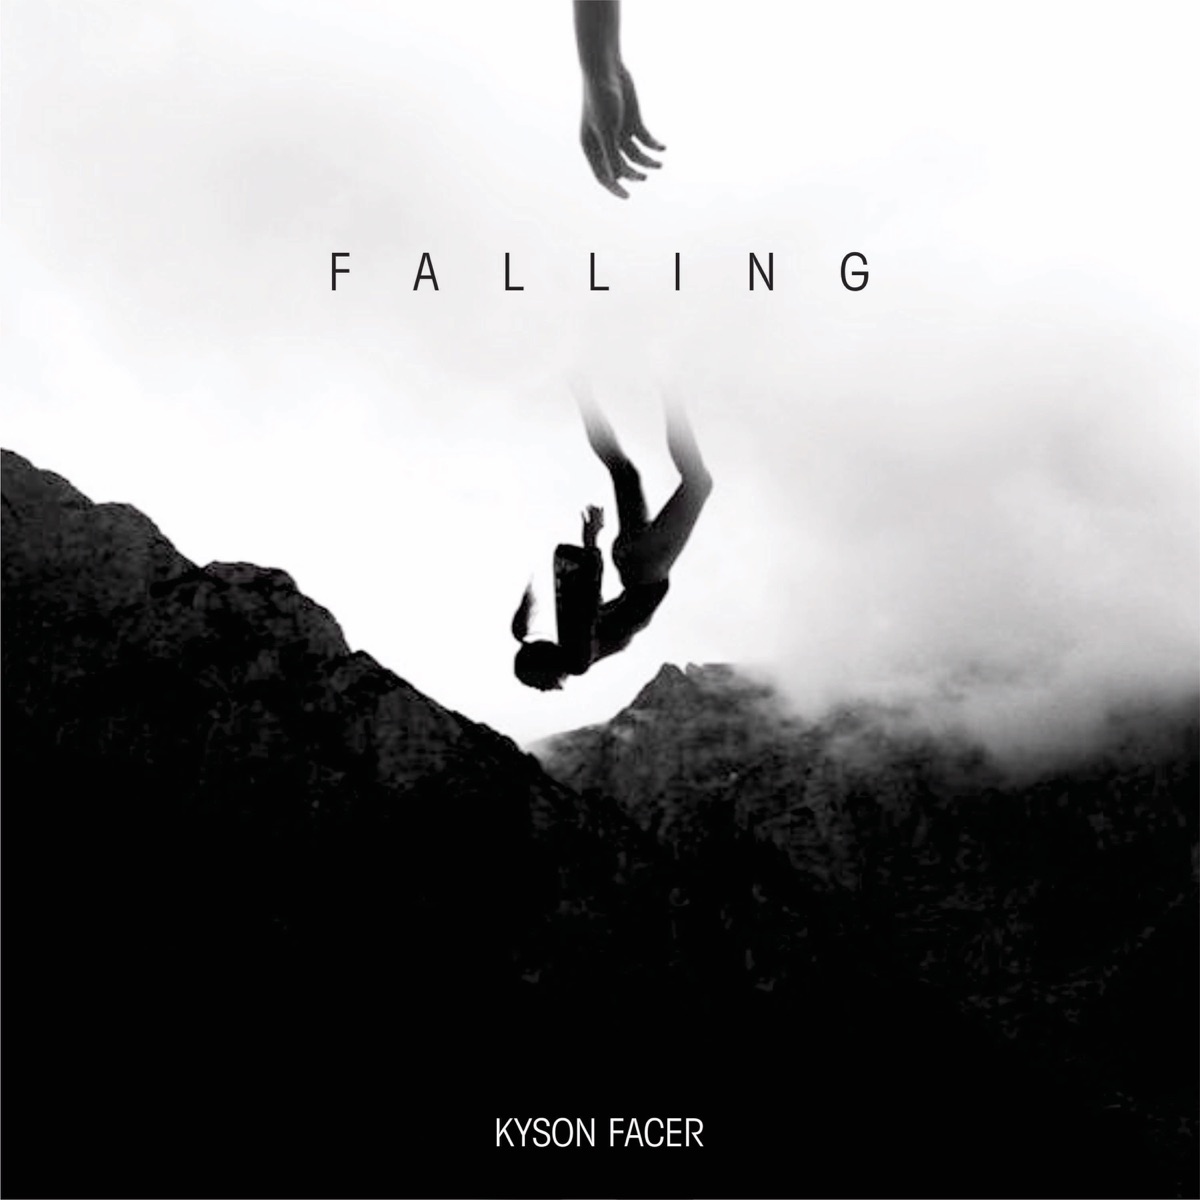 Dusk Till Dawn - Single - Album by Kyson Facer - Apple Music